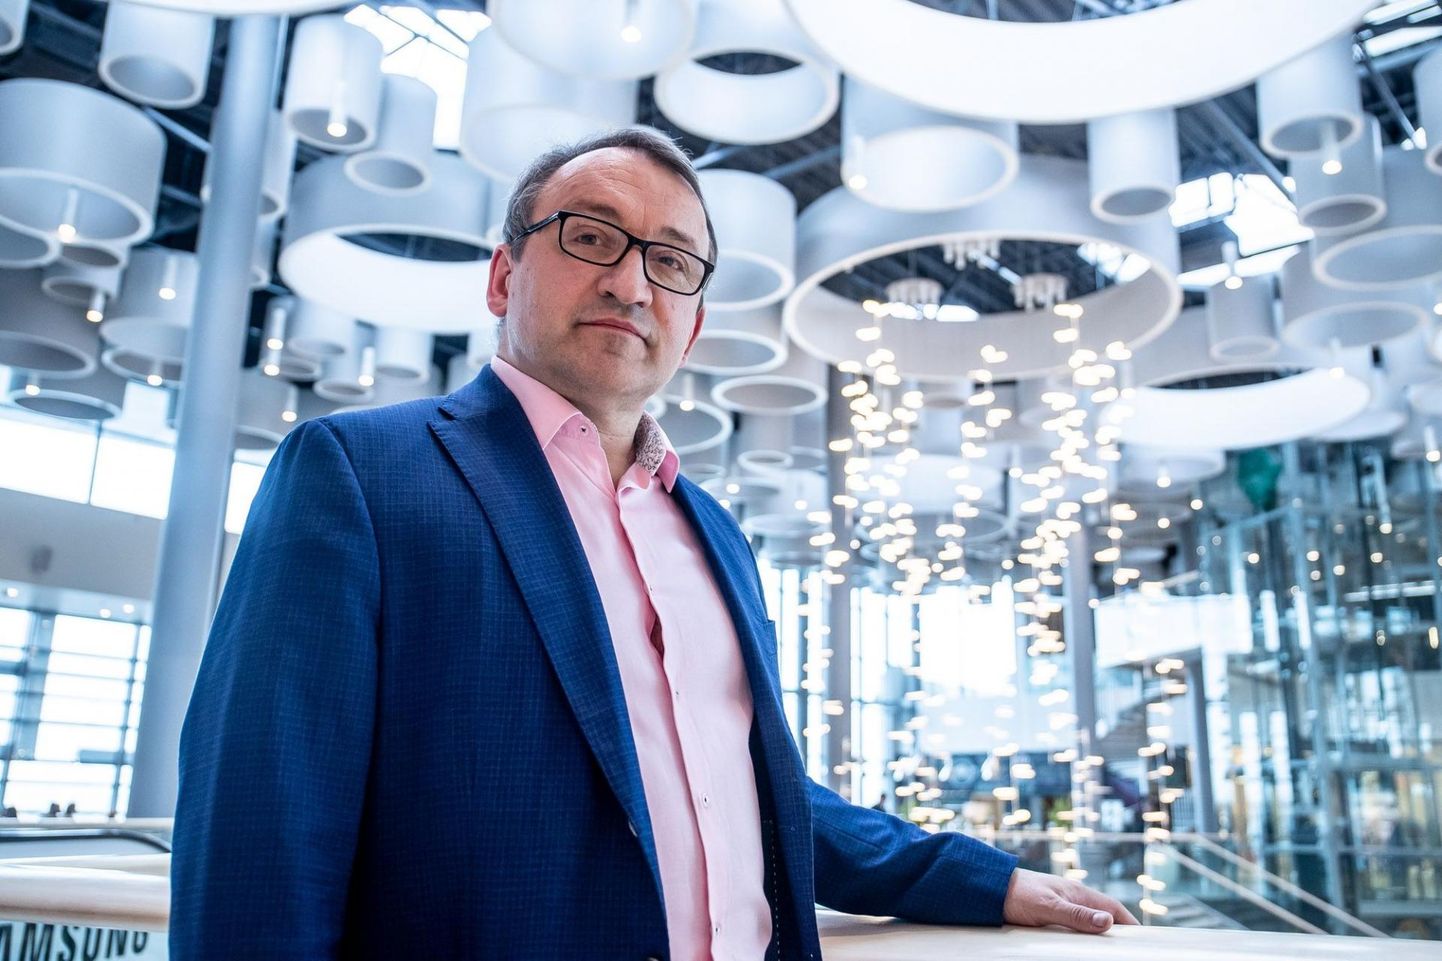 Ülemiste keskuse juht Guido Pärnits arvab, et uusi suuri kaubanduskeskusi Tallinna enam ei tule.